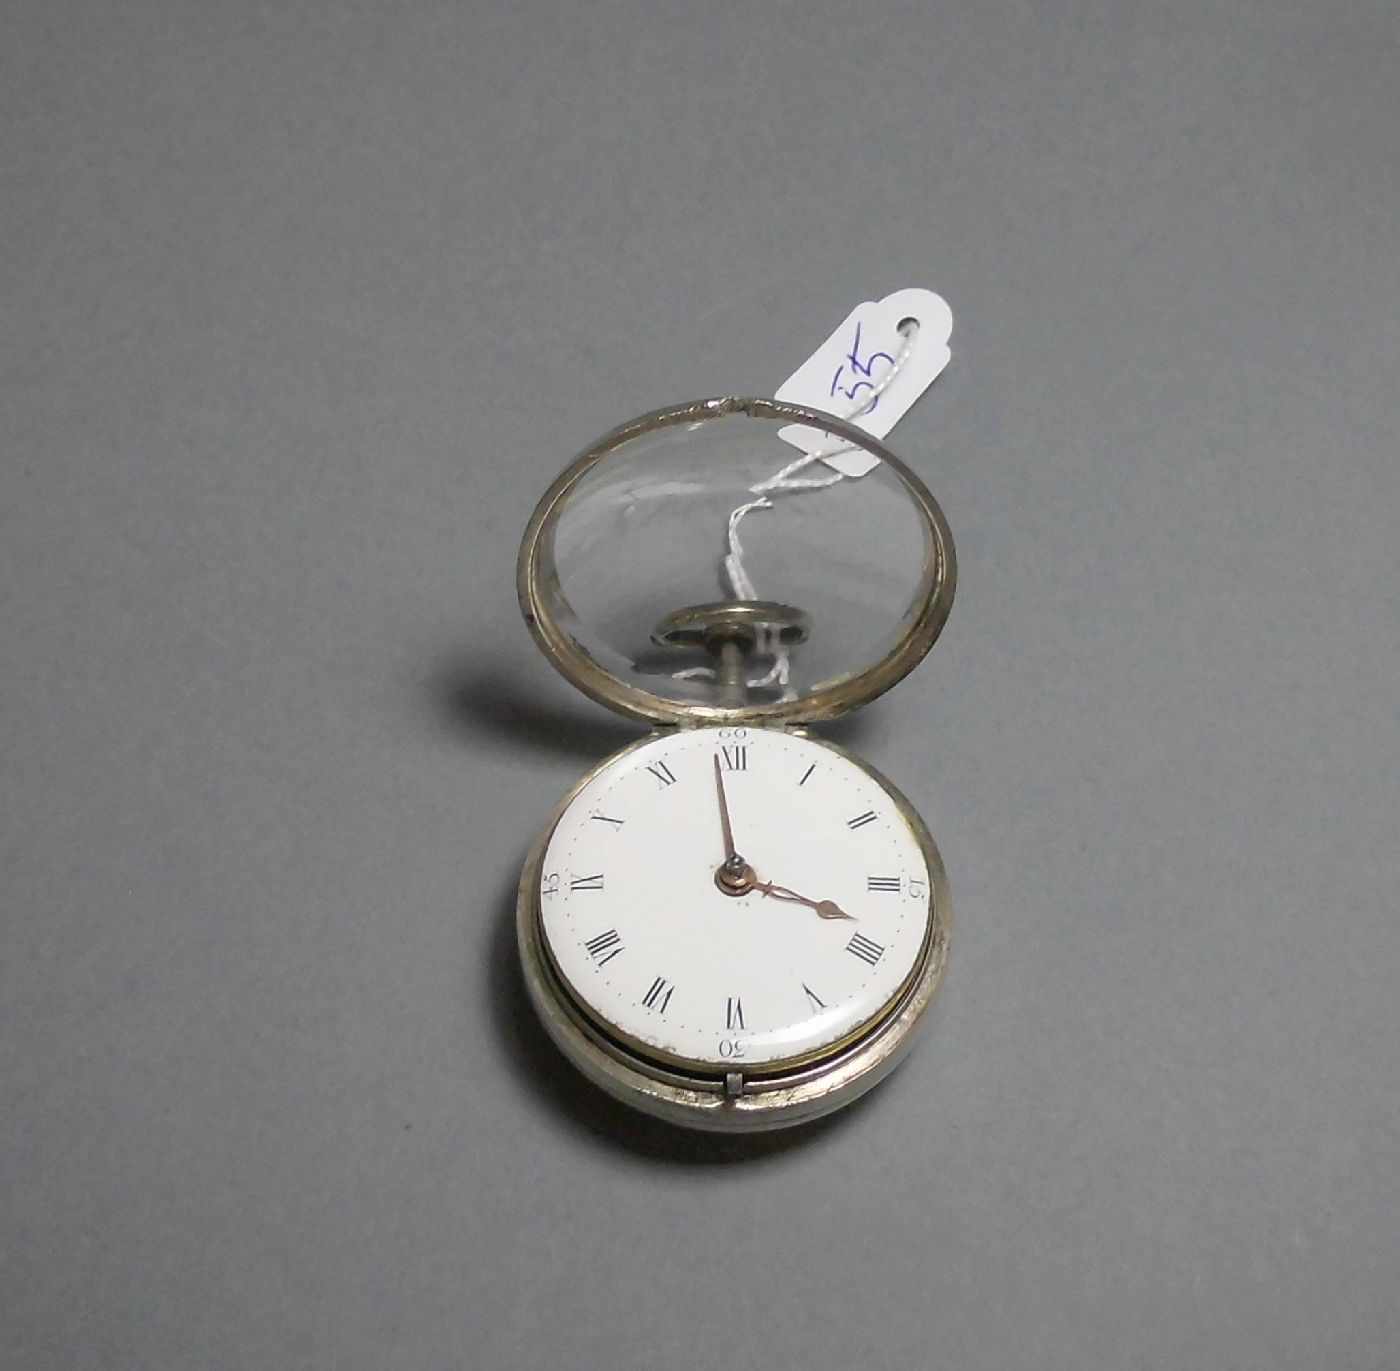 SPINDELTASCHENUHR / pocketwatch, im Silbergehäuse, London 1864, mit identischem Übergehäuse, Meister - Bild 7 aus 8